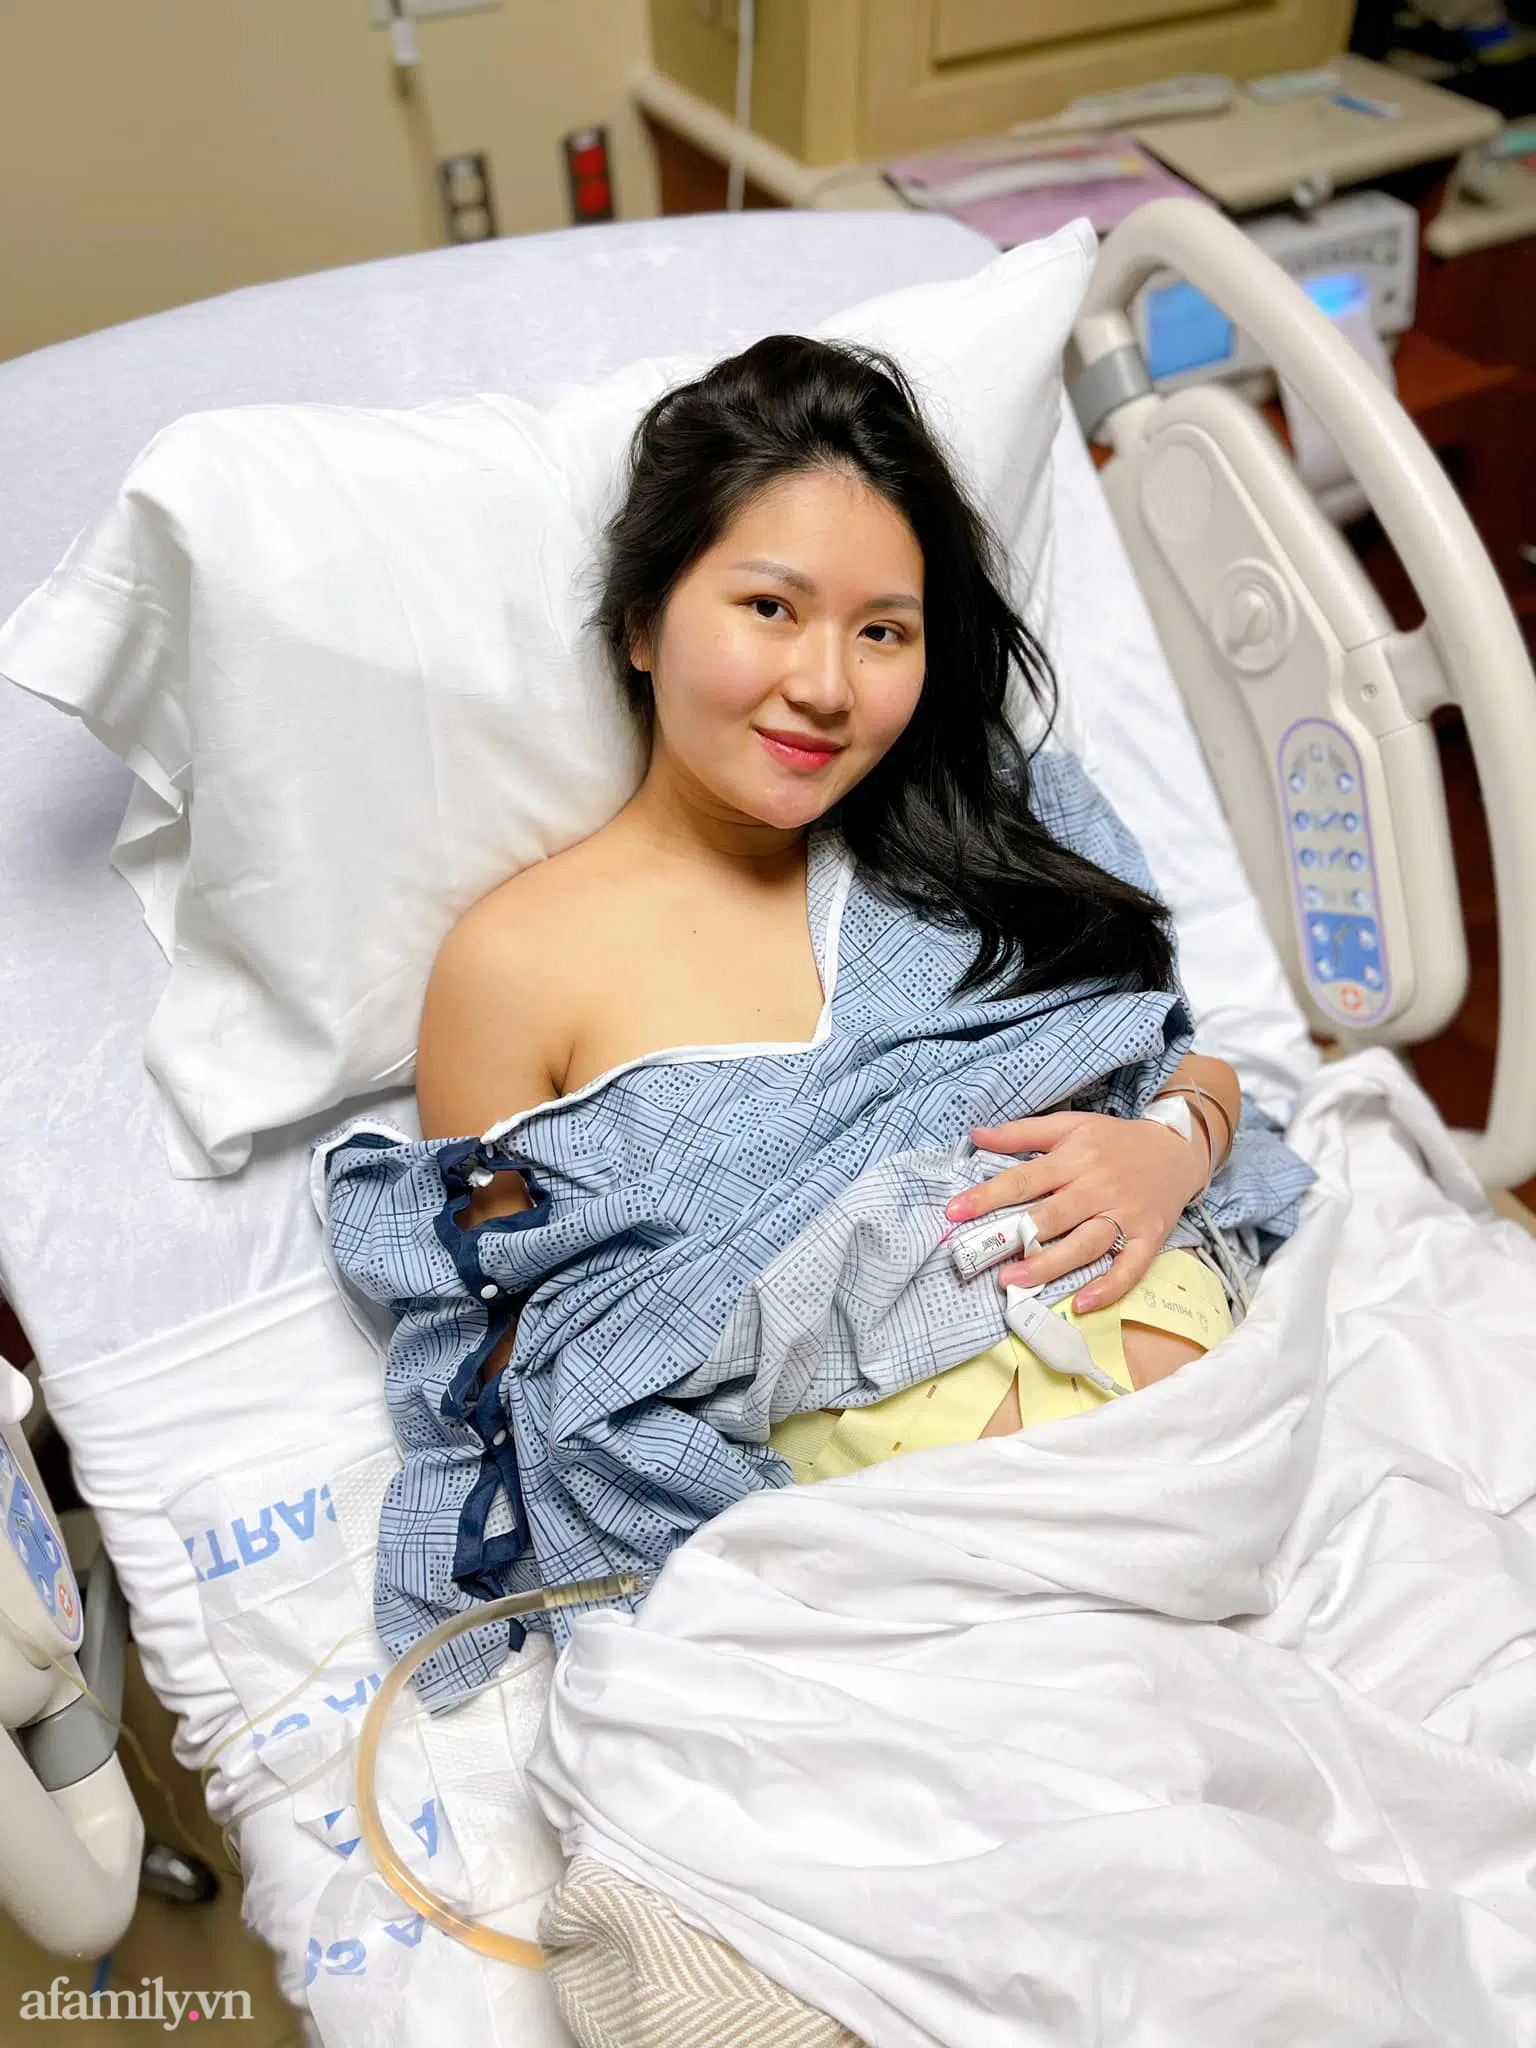 Top 9 Bệnh viện có dịch vụ sinh con tốt nhất tại Hà Nội  toplistvn